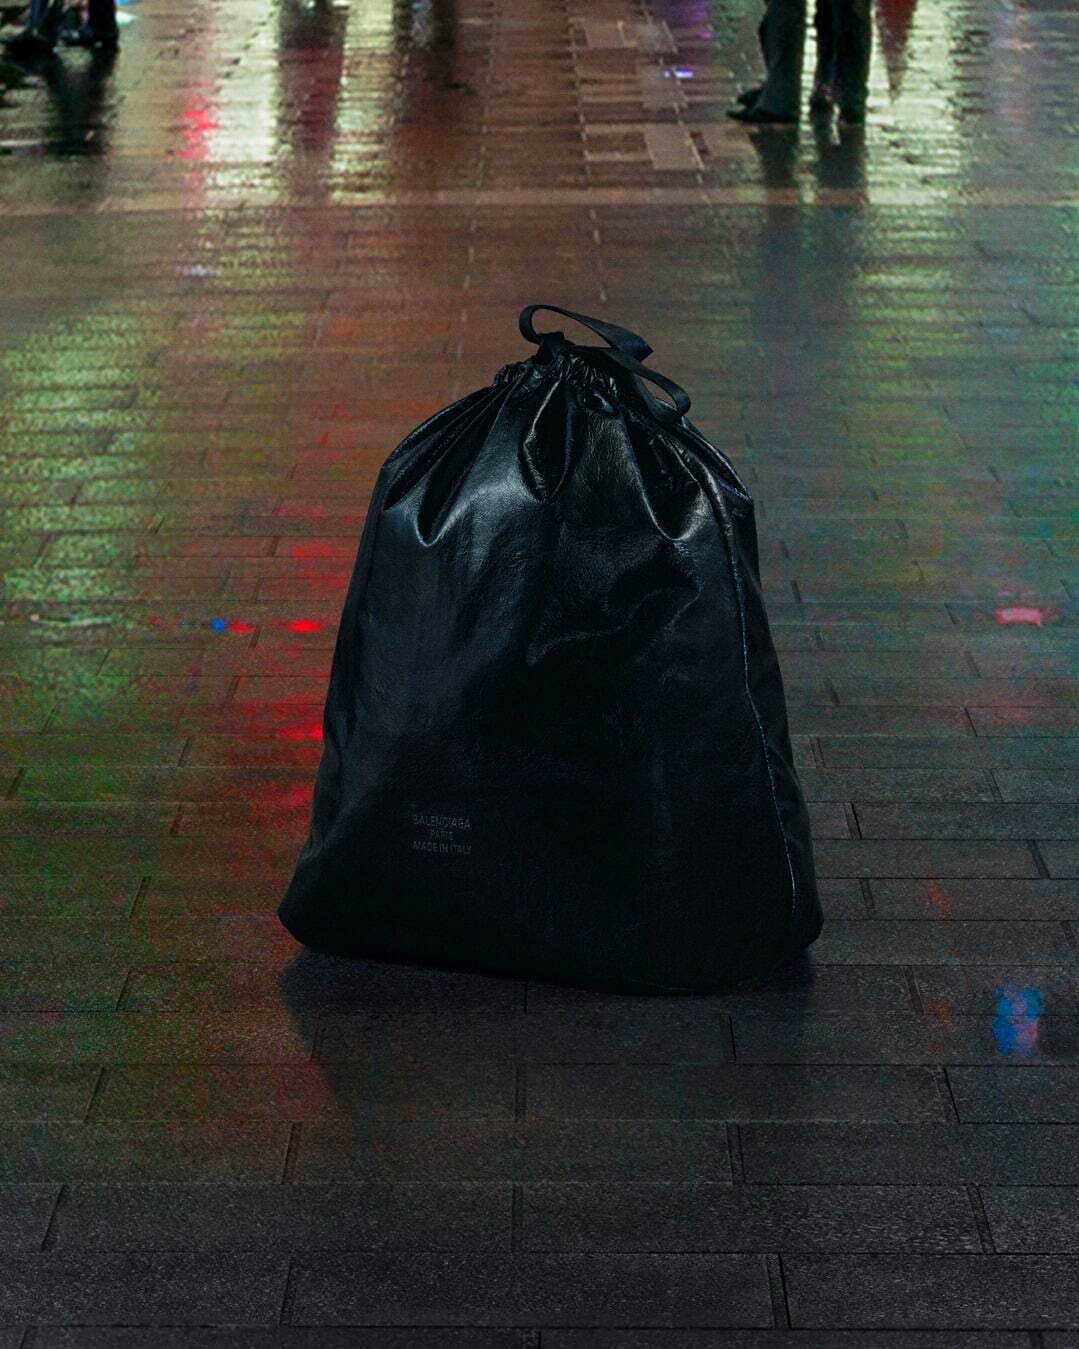 The Real Value of Balenciaga's Viral Trash Bag